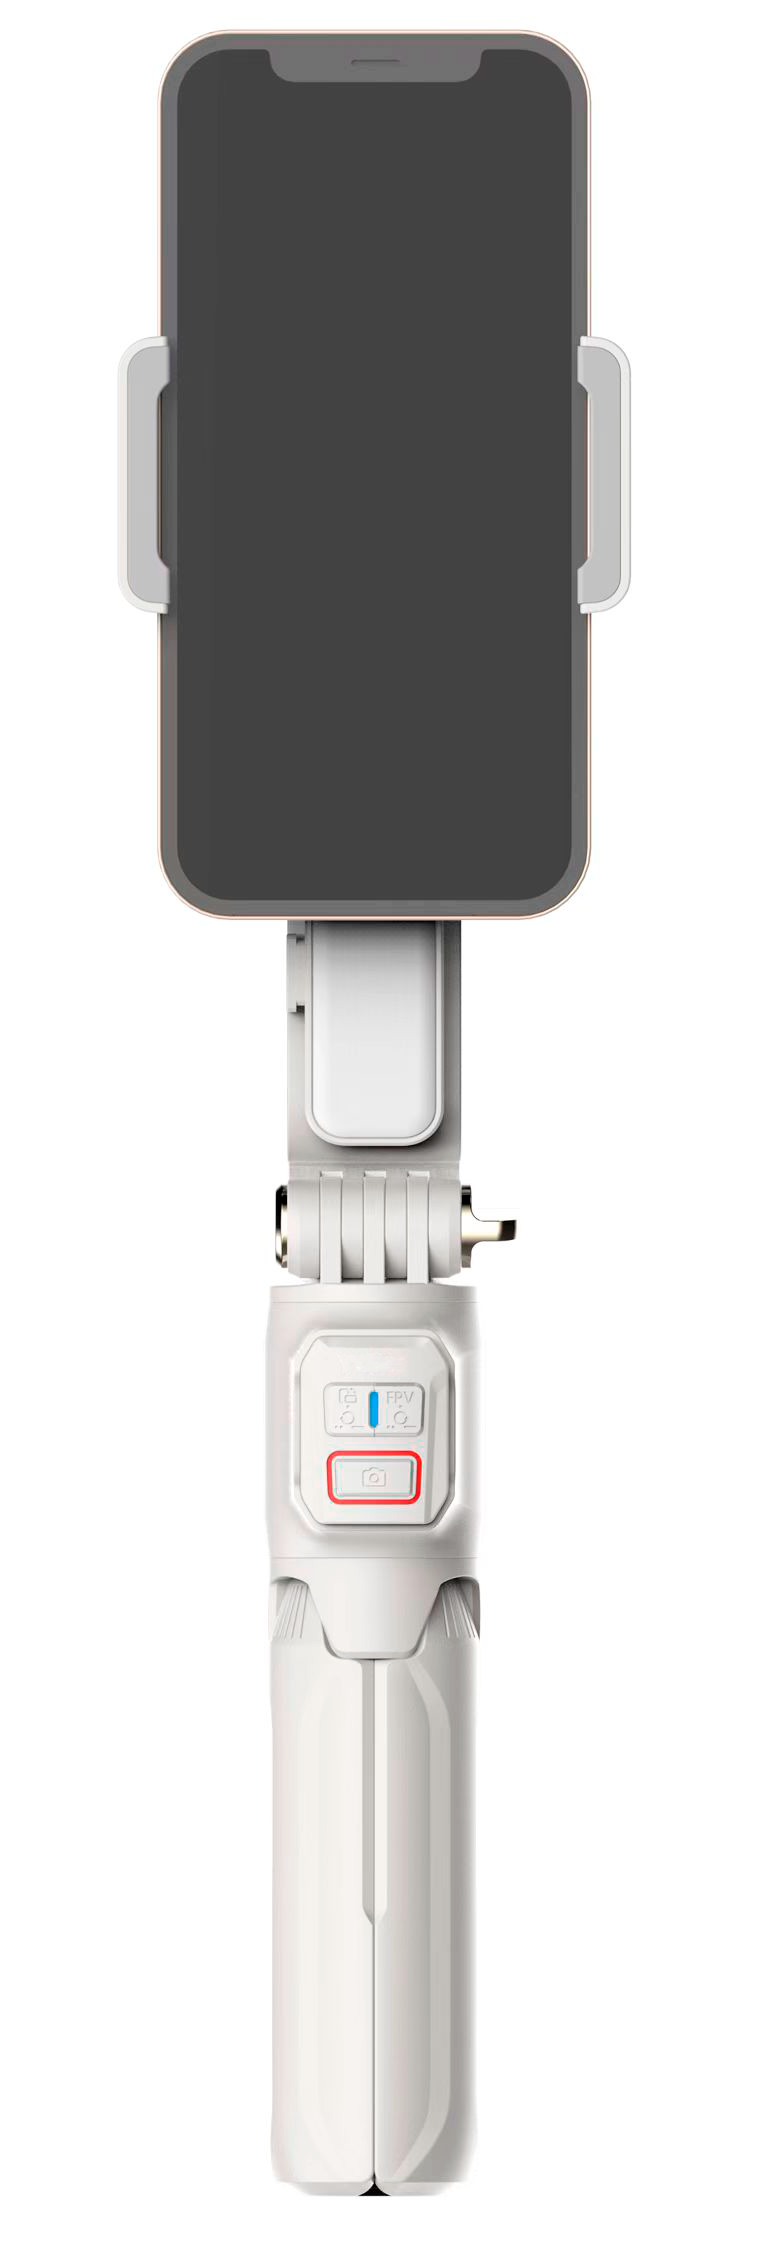 Стабилизатор для смартфона GimbalPro A10 White стабилизатор mobicent mcer310293